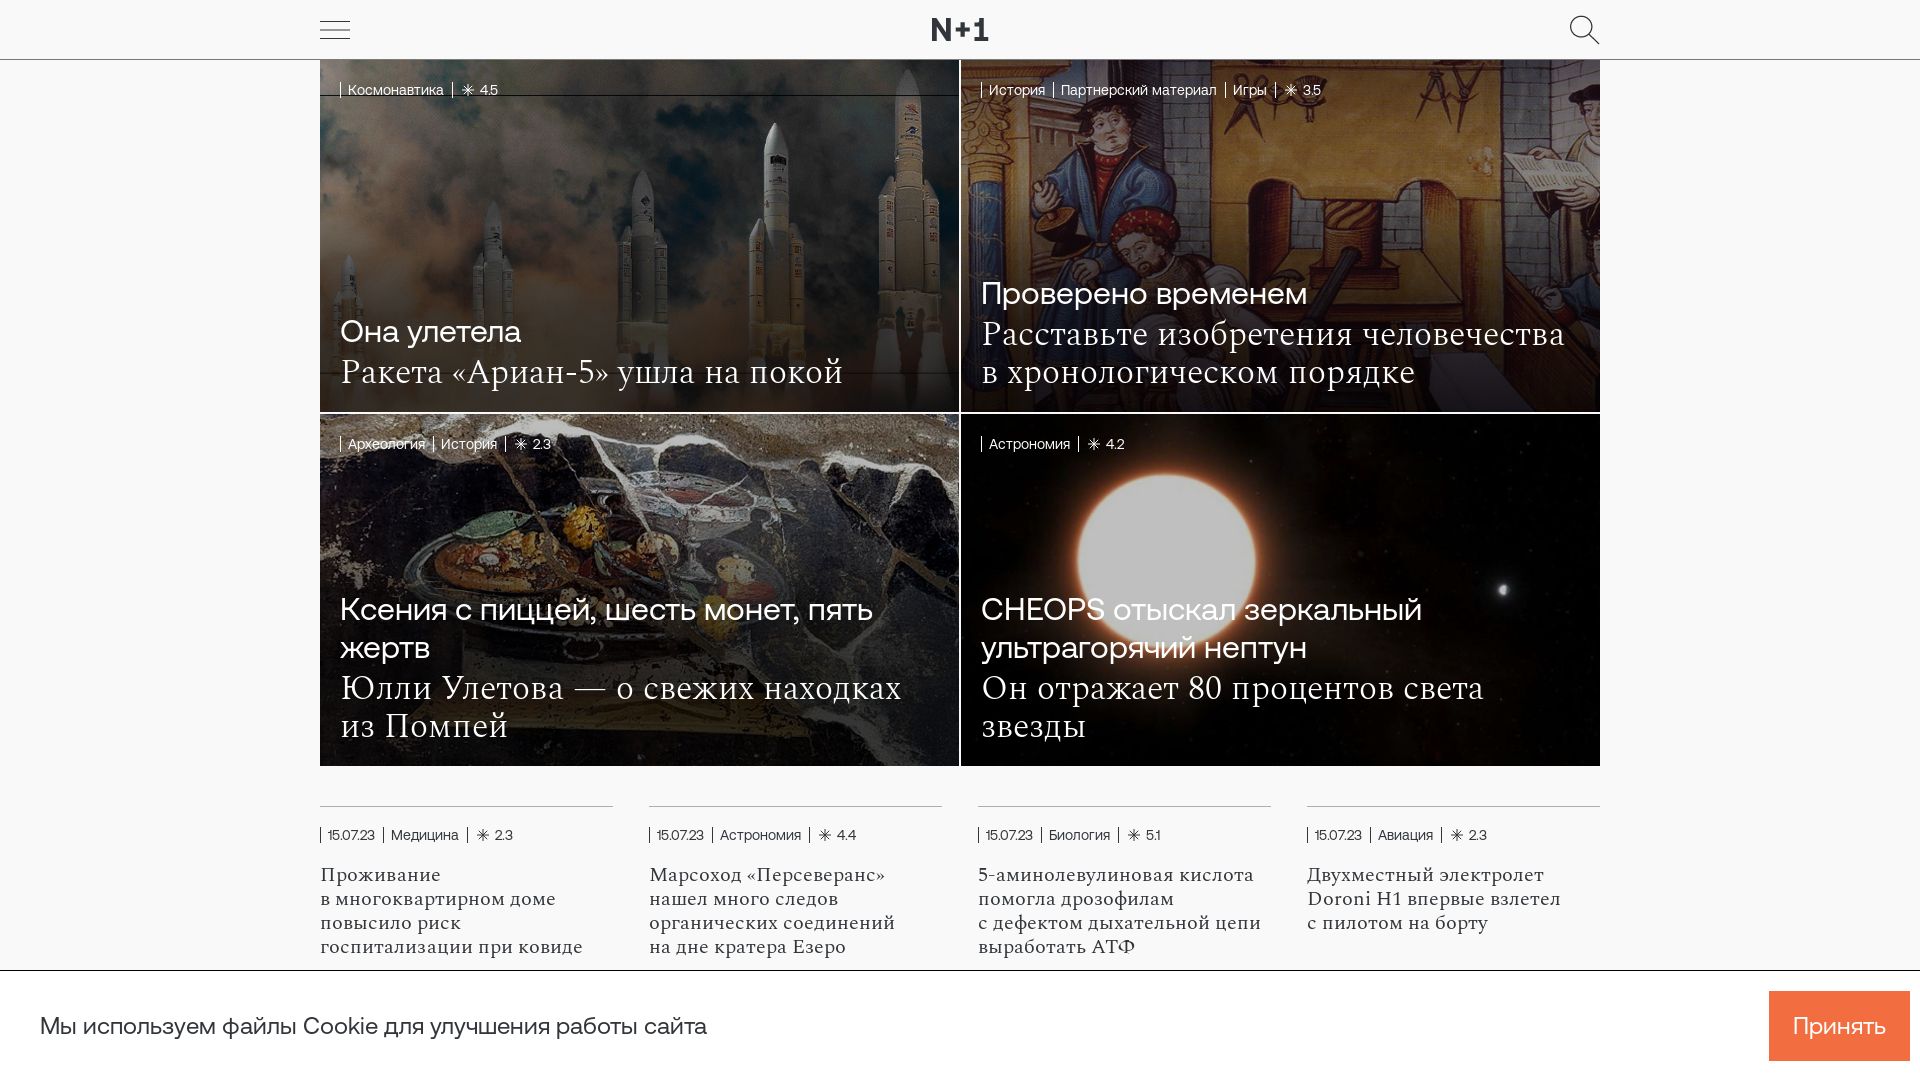 вебсайт nplus1.ru Є   ONLINE